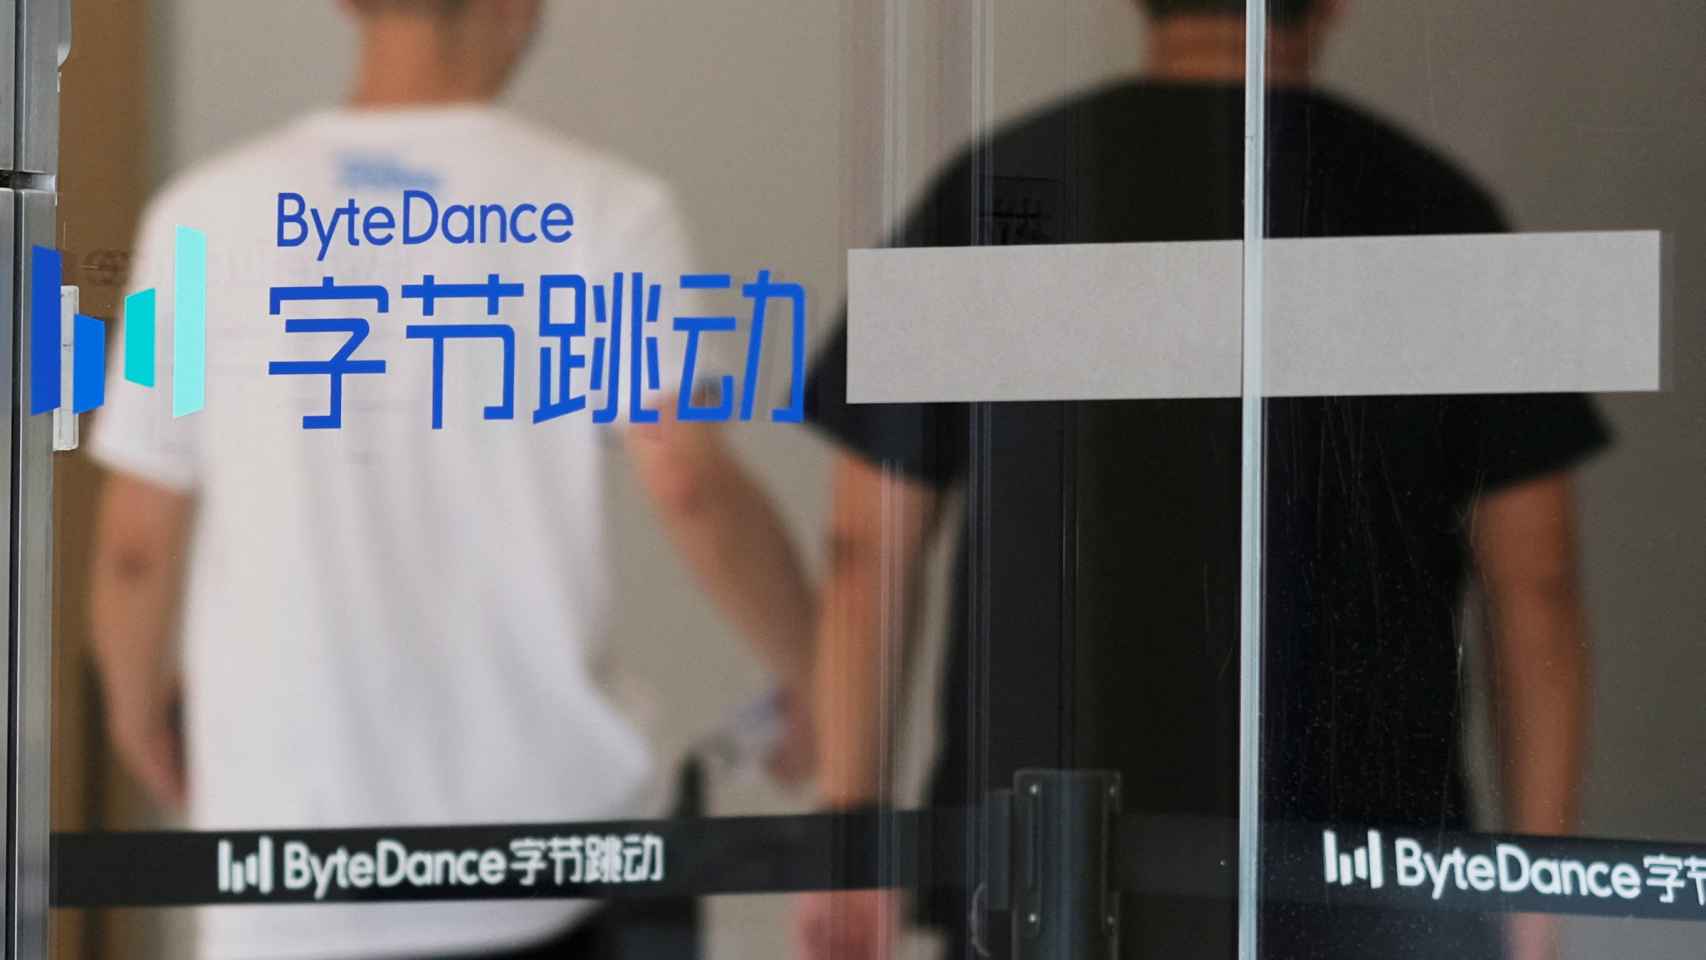 Dos personas detrás del logo de Bytedance, empresa propietaria de TikTok, en su sede en Pekín.